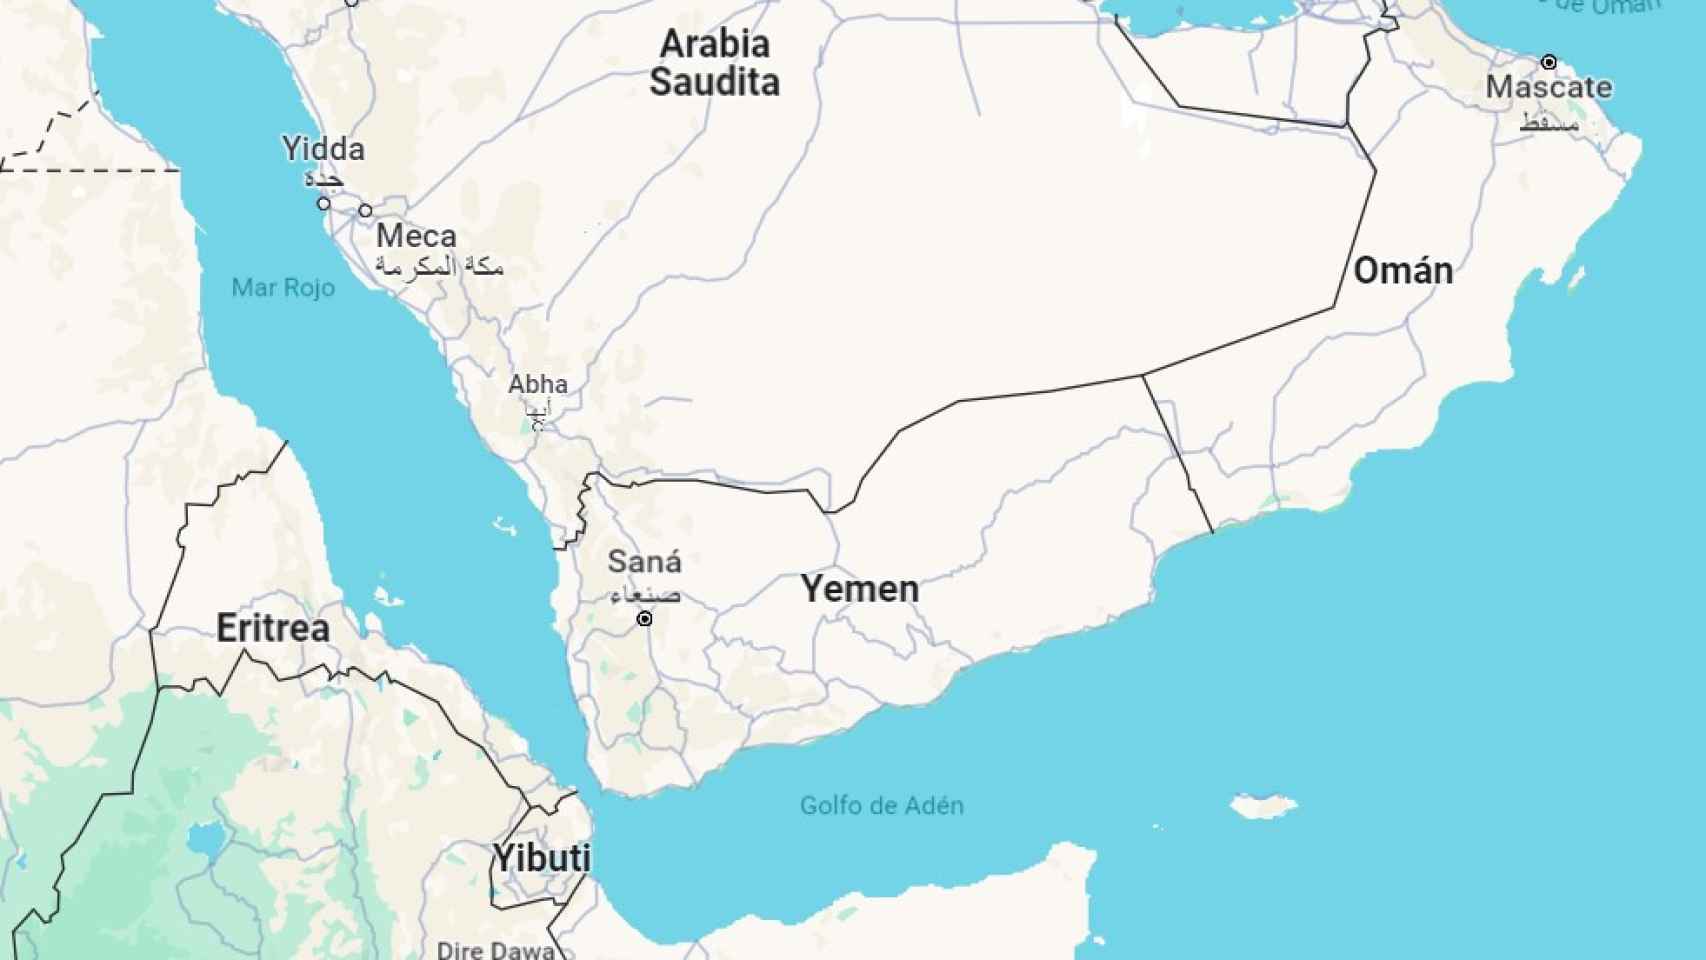 Mapa de la zona con el estrecho de Bab el-Mandem entre el Mar Rojo y el Golfo de Adén